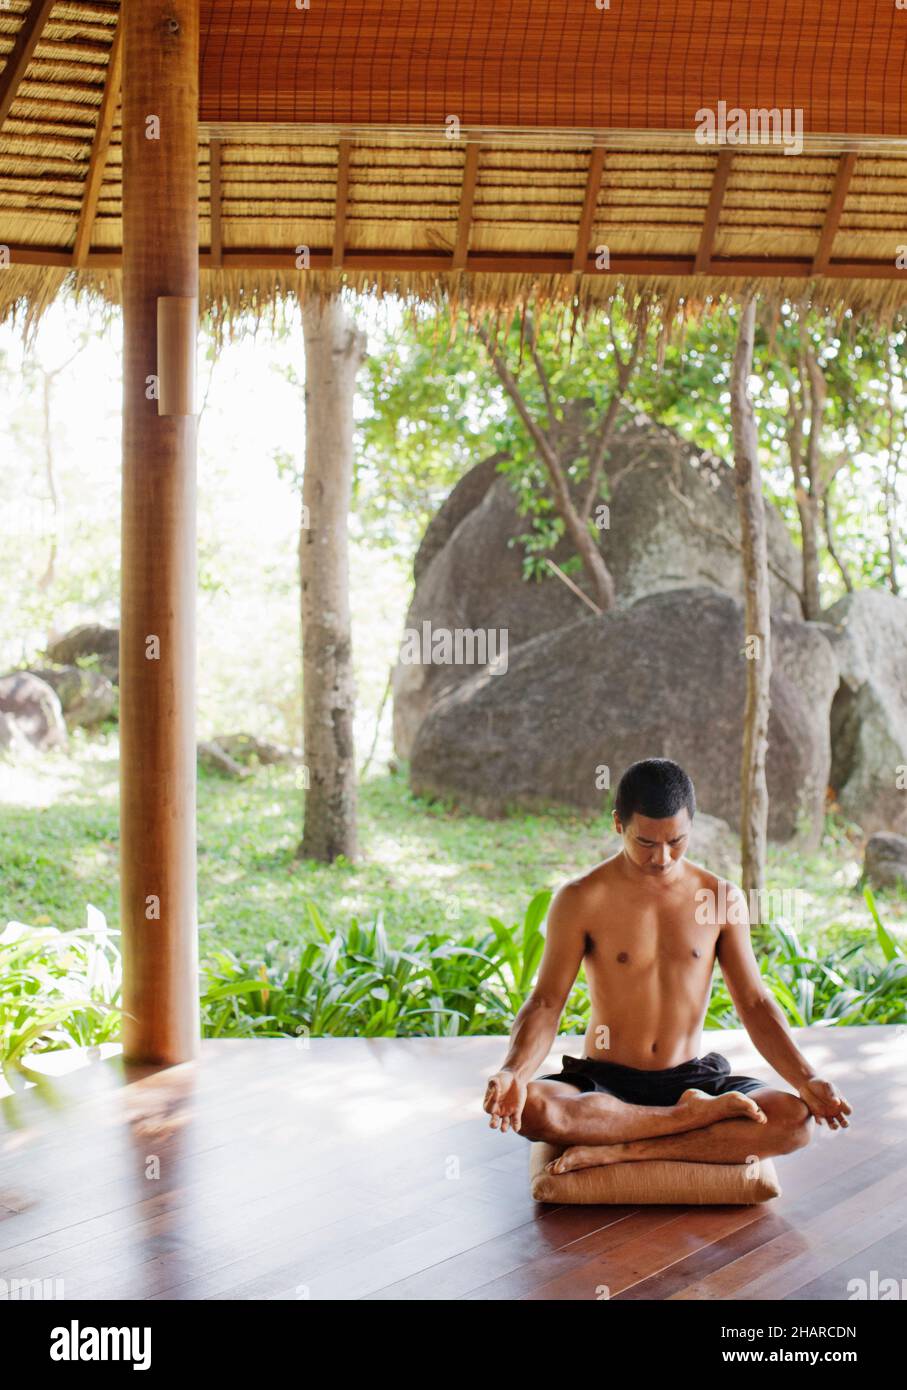 Hombre practicando Pranayama en Kamalaya, Koh Samui, Tailandia. El instructor de yoga Khun Chack practica pranayama o respiración yóguica. Foto de stock